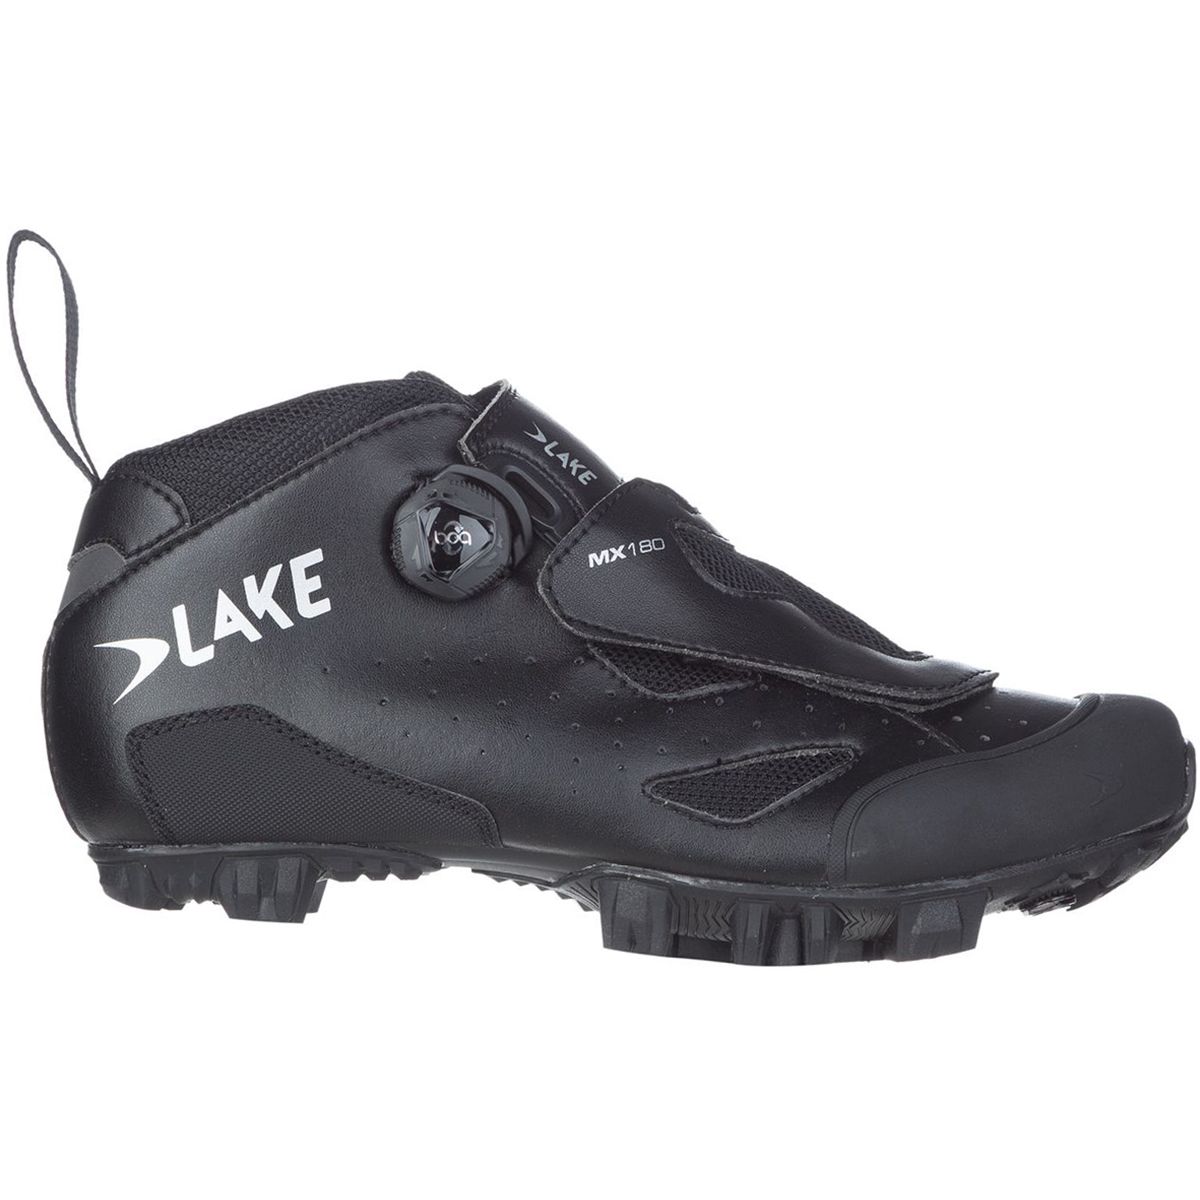 Lake MX180 Cycling Shoe - Men's Black, 45.0